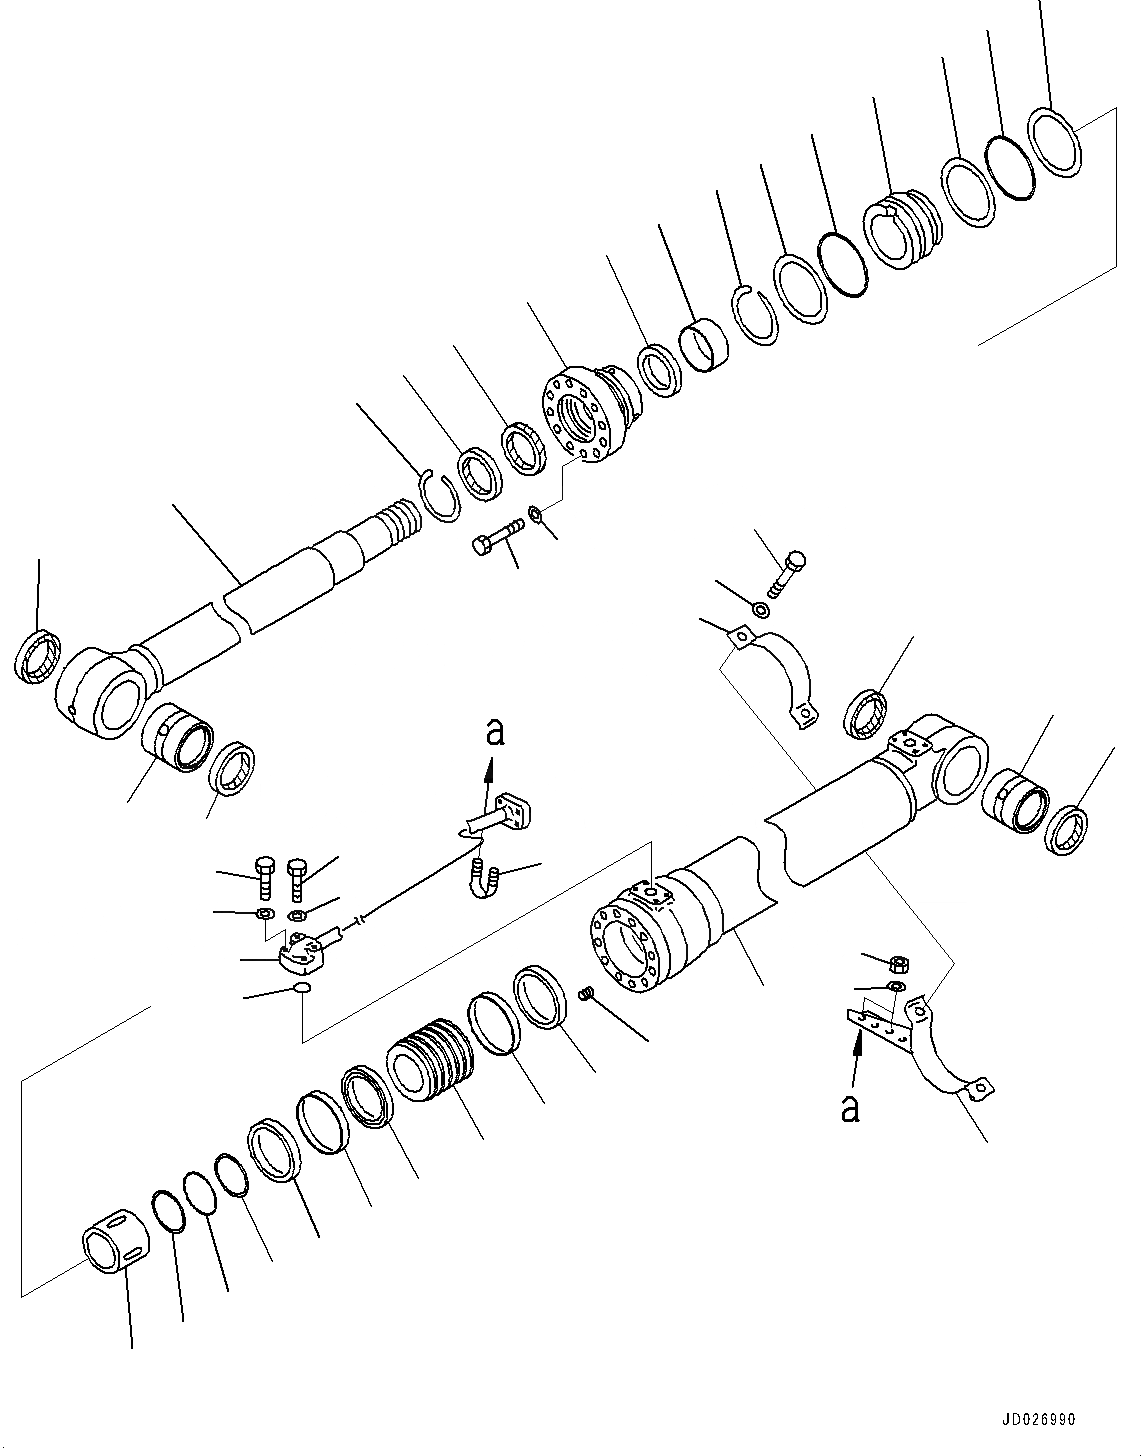 Схема запчастей Komatsu PC220-8 - ЦИЛИНДР СТРЕЛЫ, ЛЕВ. (№877-) ЦИЛИНДР СТРЕЛЫ, ДЛЯ СТРЕЛЫ И РУКОЯТЬ ANTI-DROP КЛАПАН